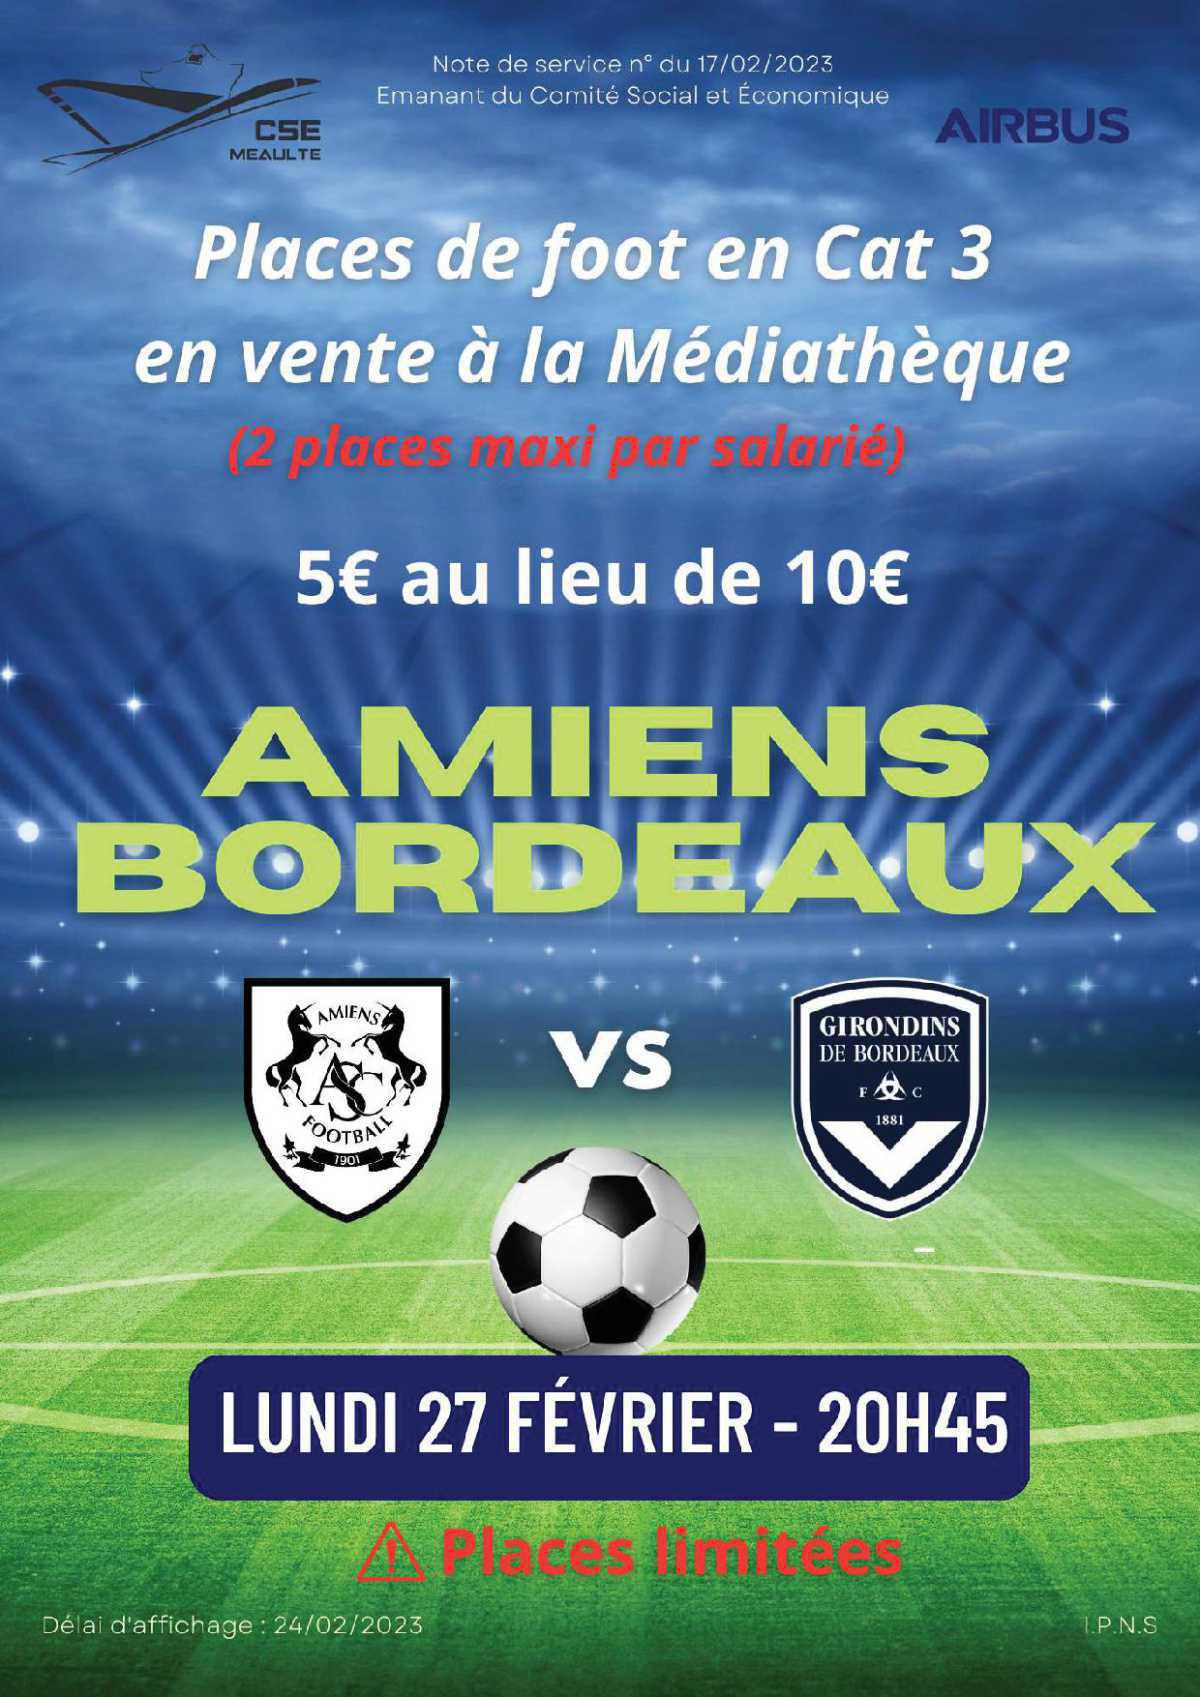 Foot Amiens Bordeaux le 27 février 